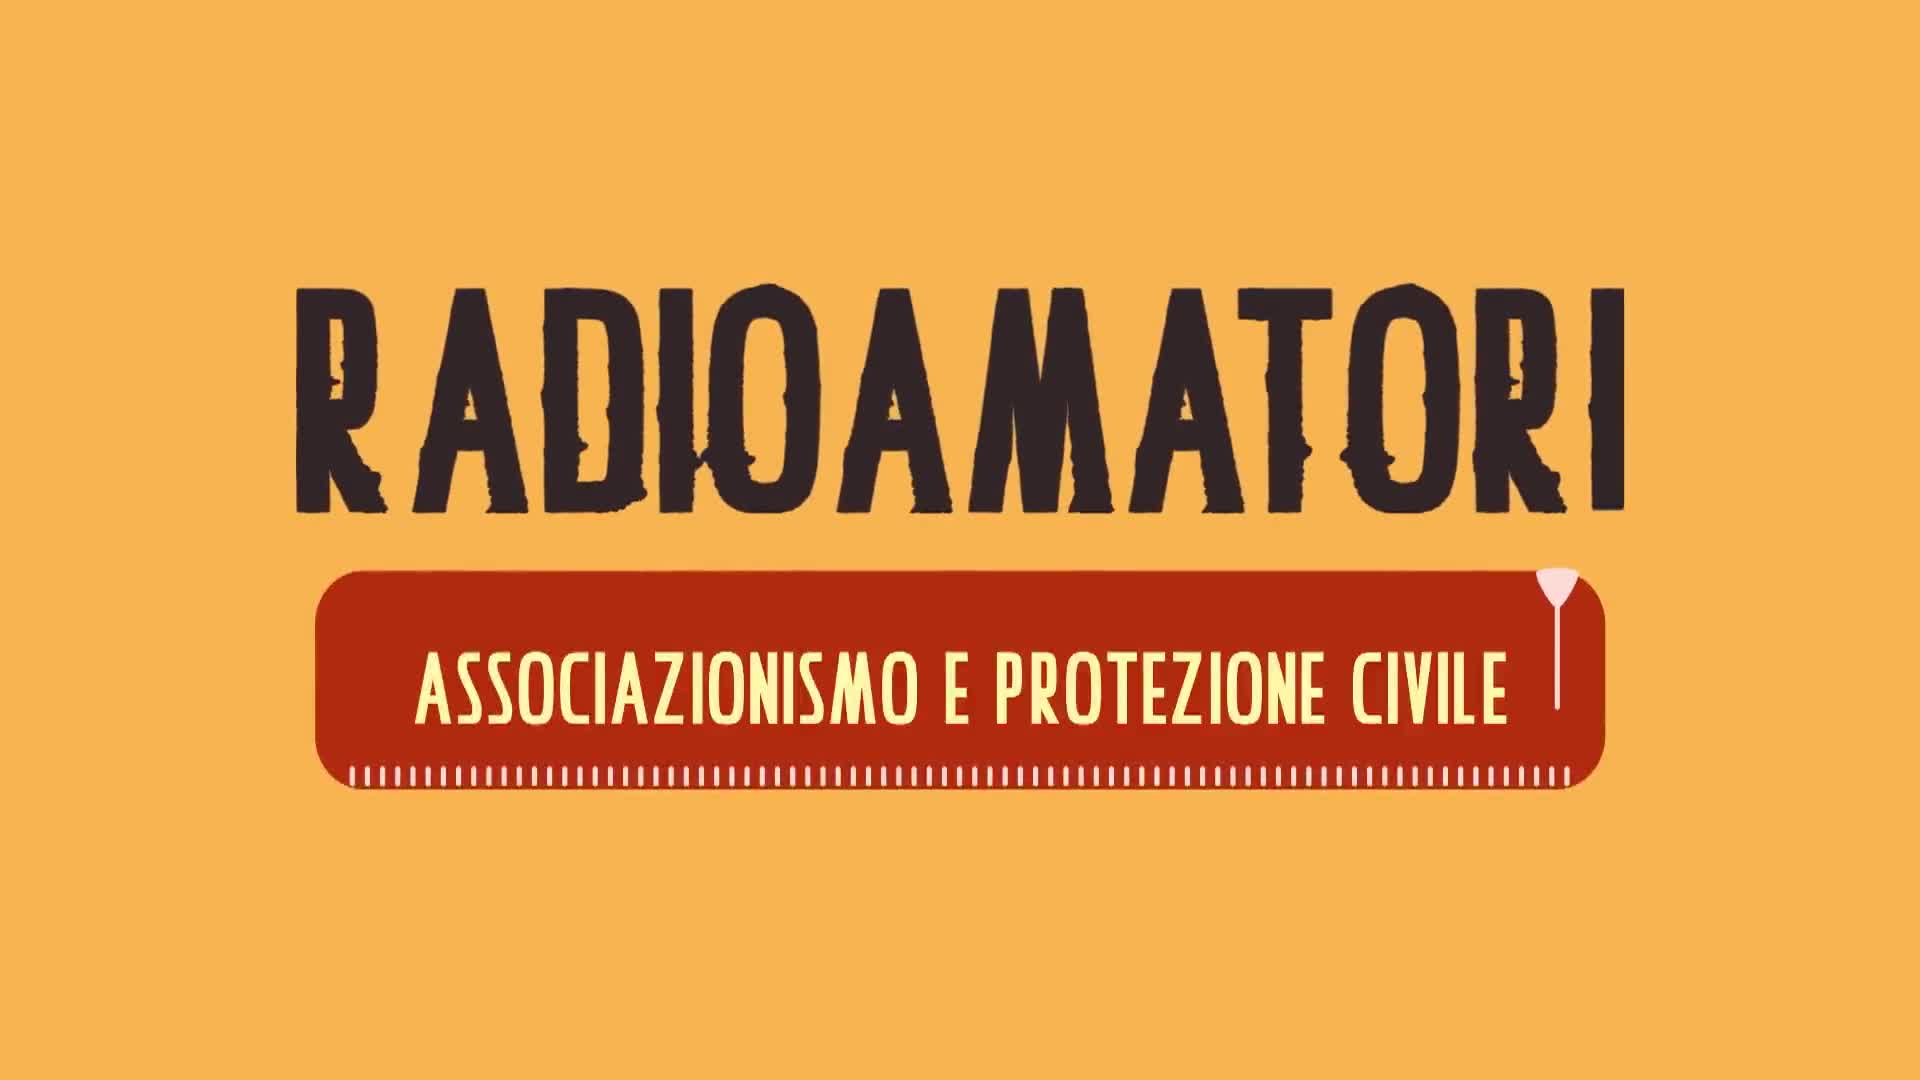 Radioamatori | Associazionismo Protezione Civile - immagine